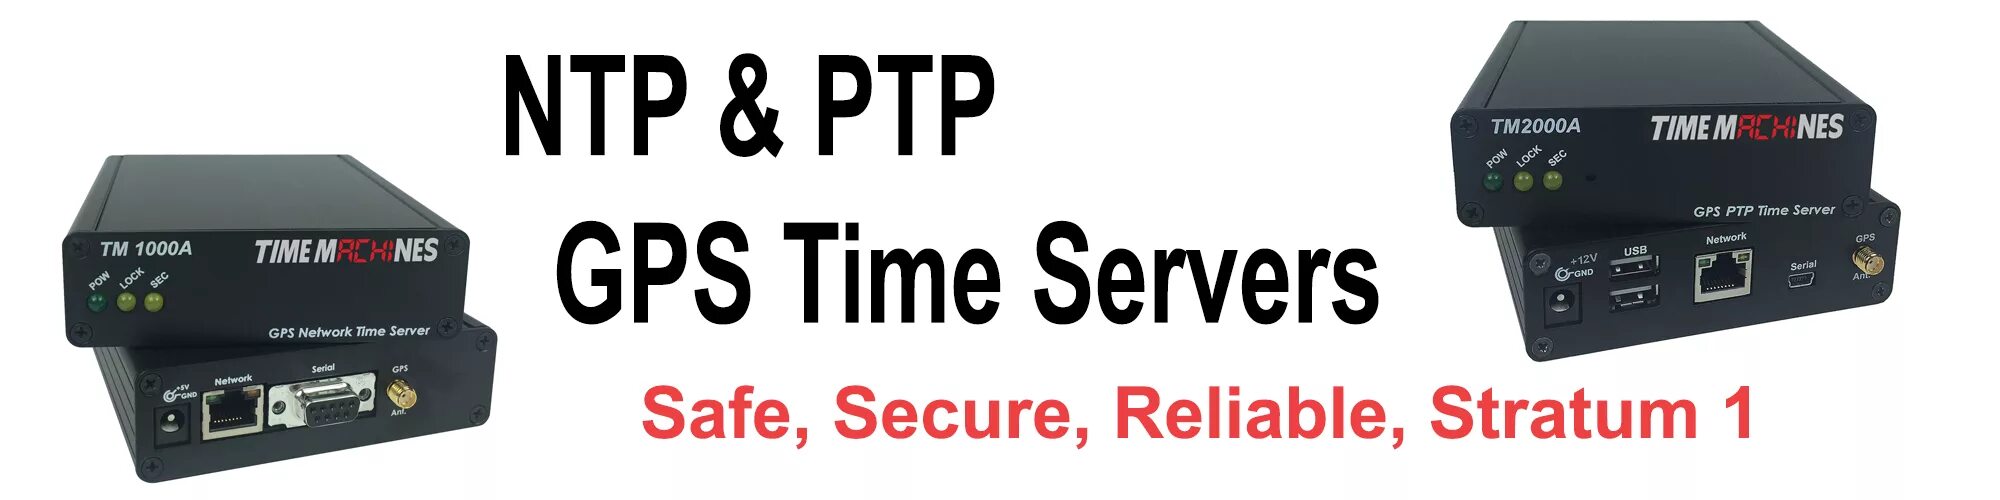 Ntp servers russia. NTP сервер. Сервер реального времени. Сервер времени. NTP-сервер точного времени.